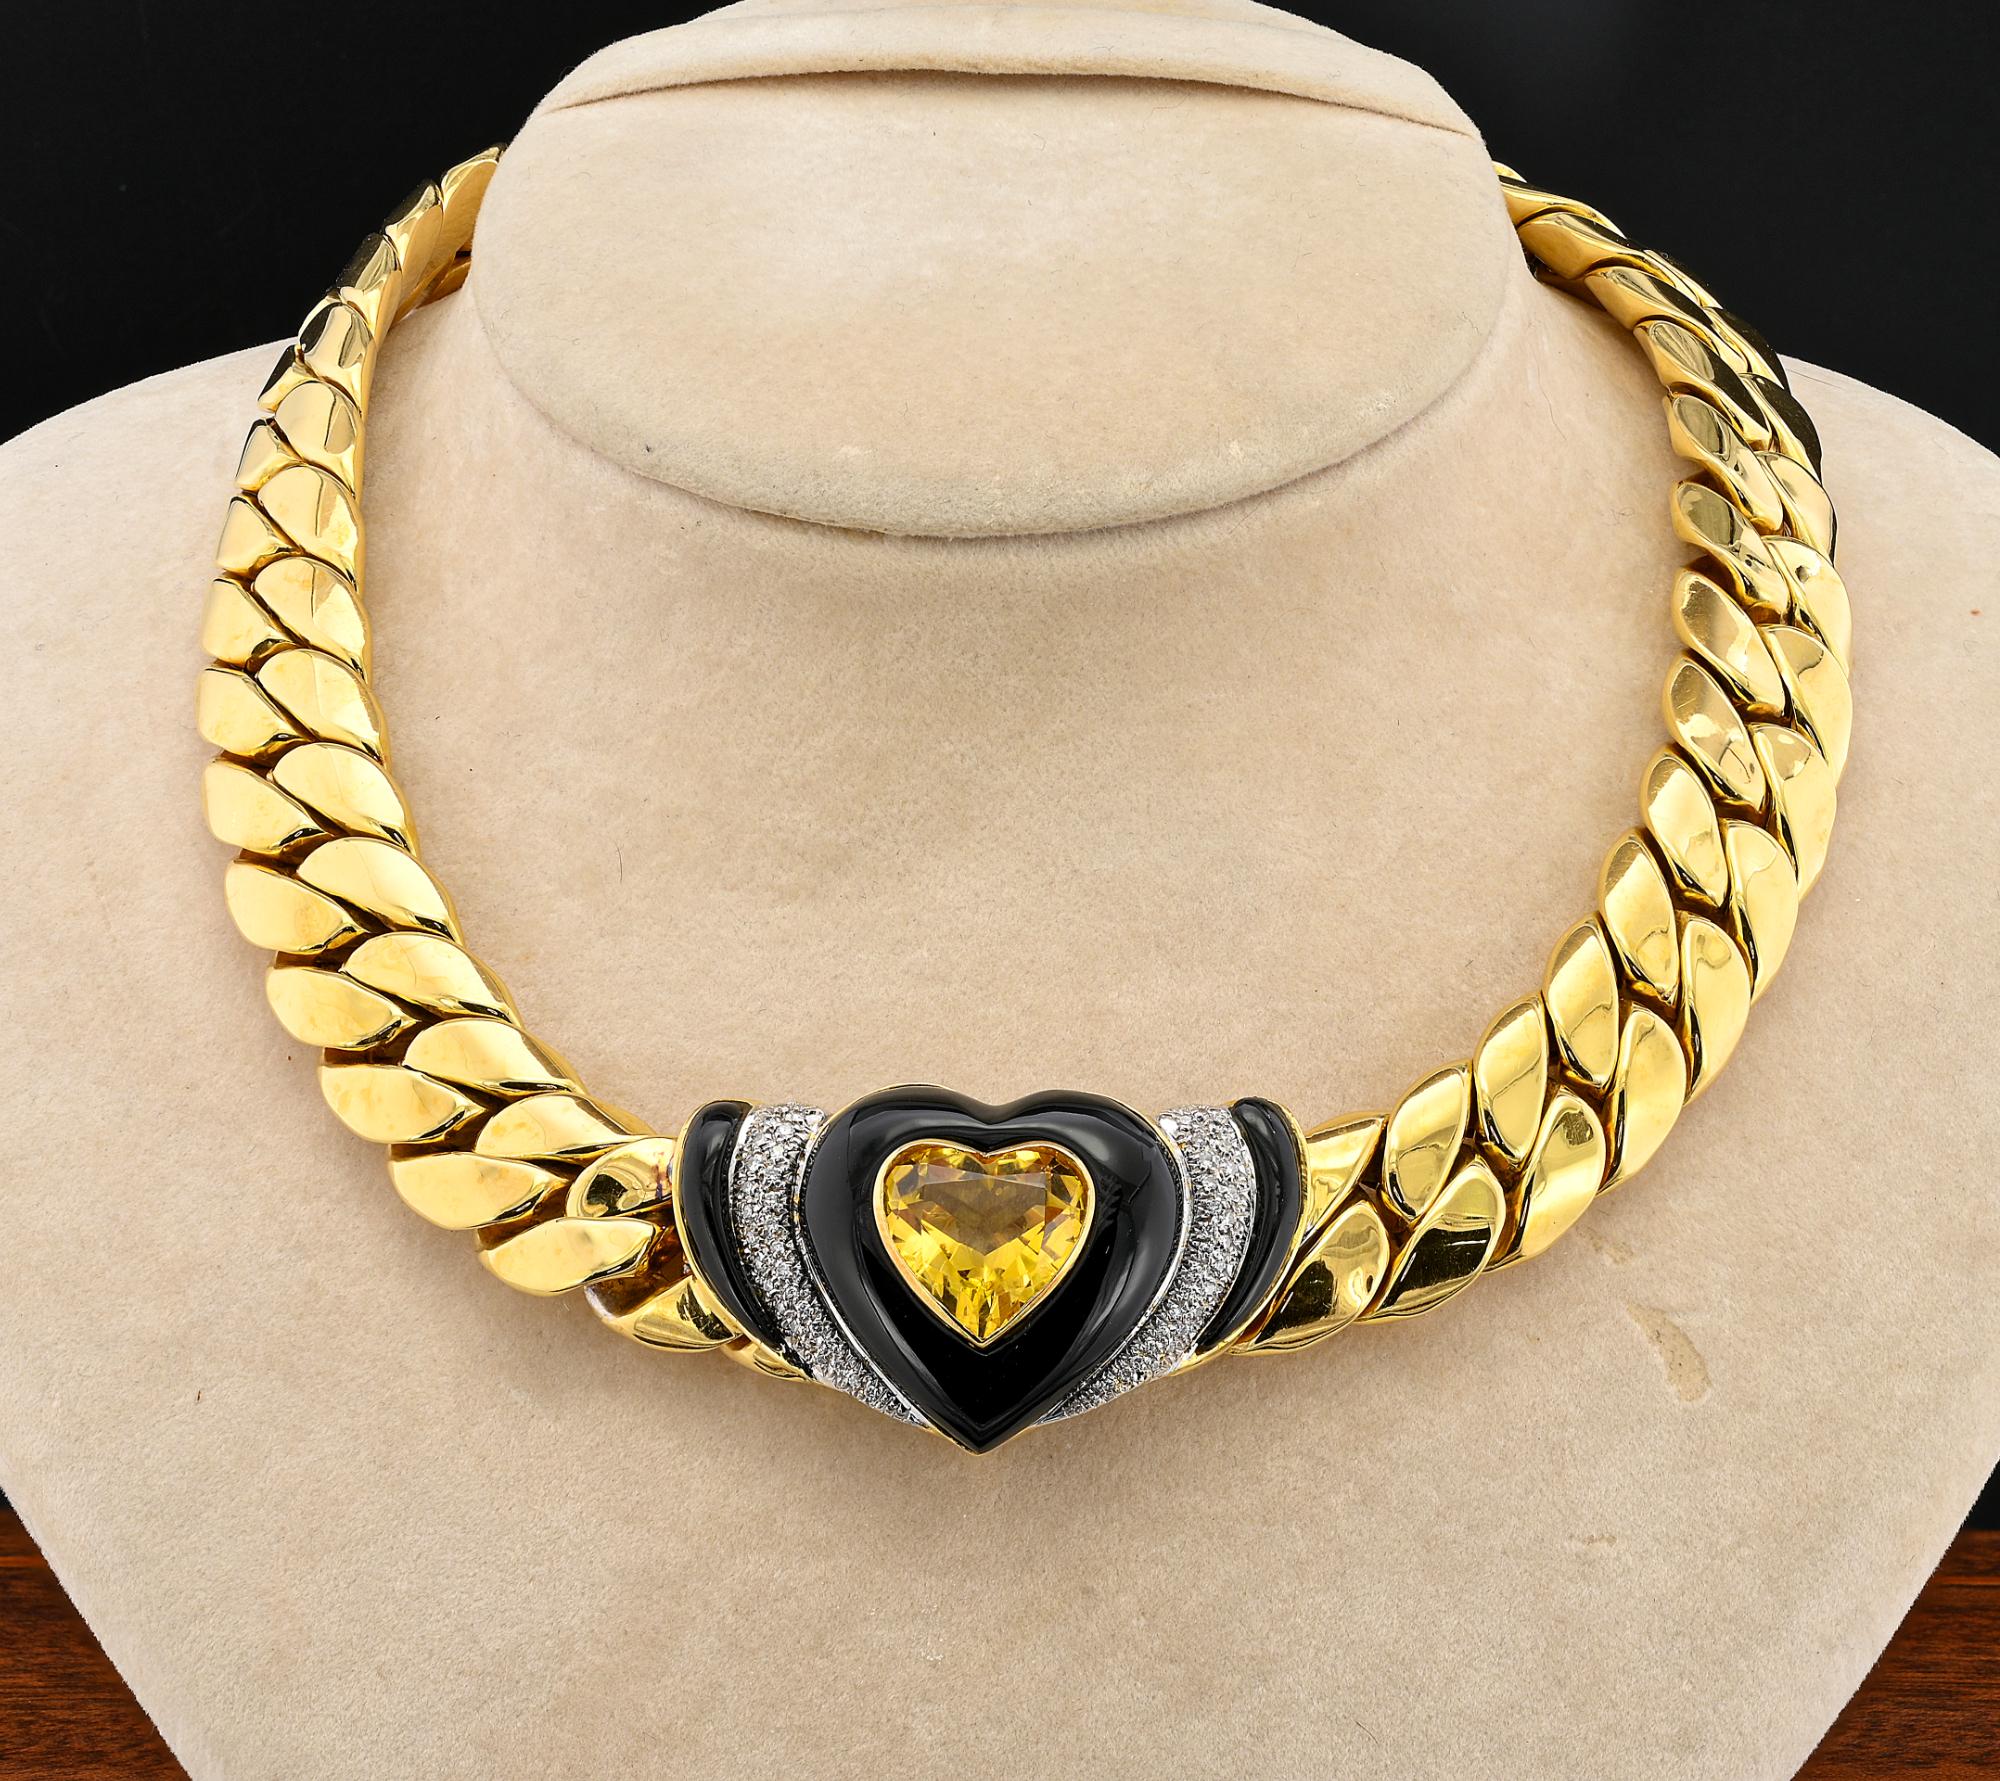 Diese faszinierende italienische Halskette ist ein bemerkenswertes Beispiel aus dem Jahr 1975, ca.
Vollständig aus massivem 18 KT Gold gefertigt
Große kubanische Gliederkette, die zu einem hervorragenden Zentrum führt, das mit einem natürlichen